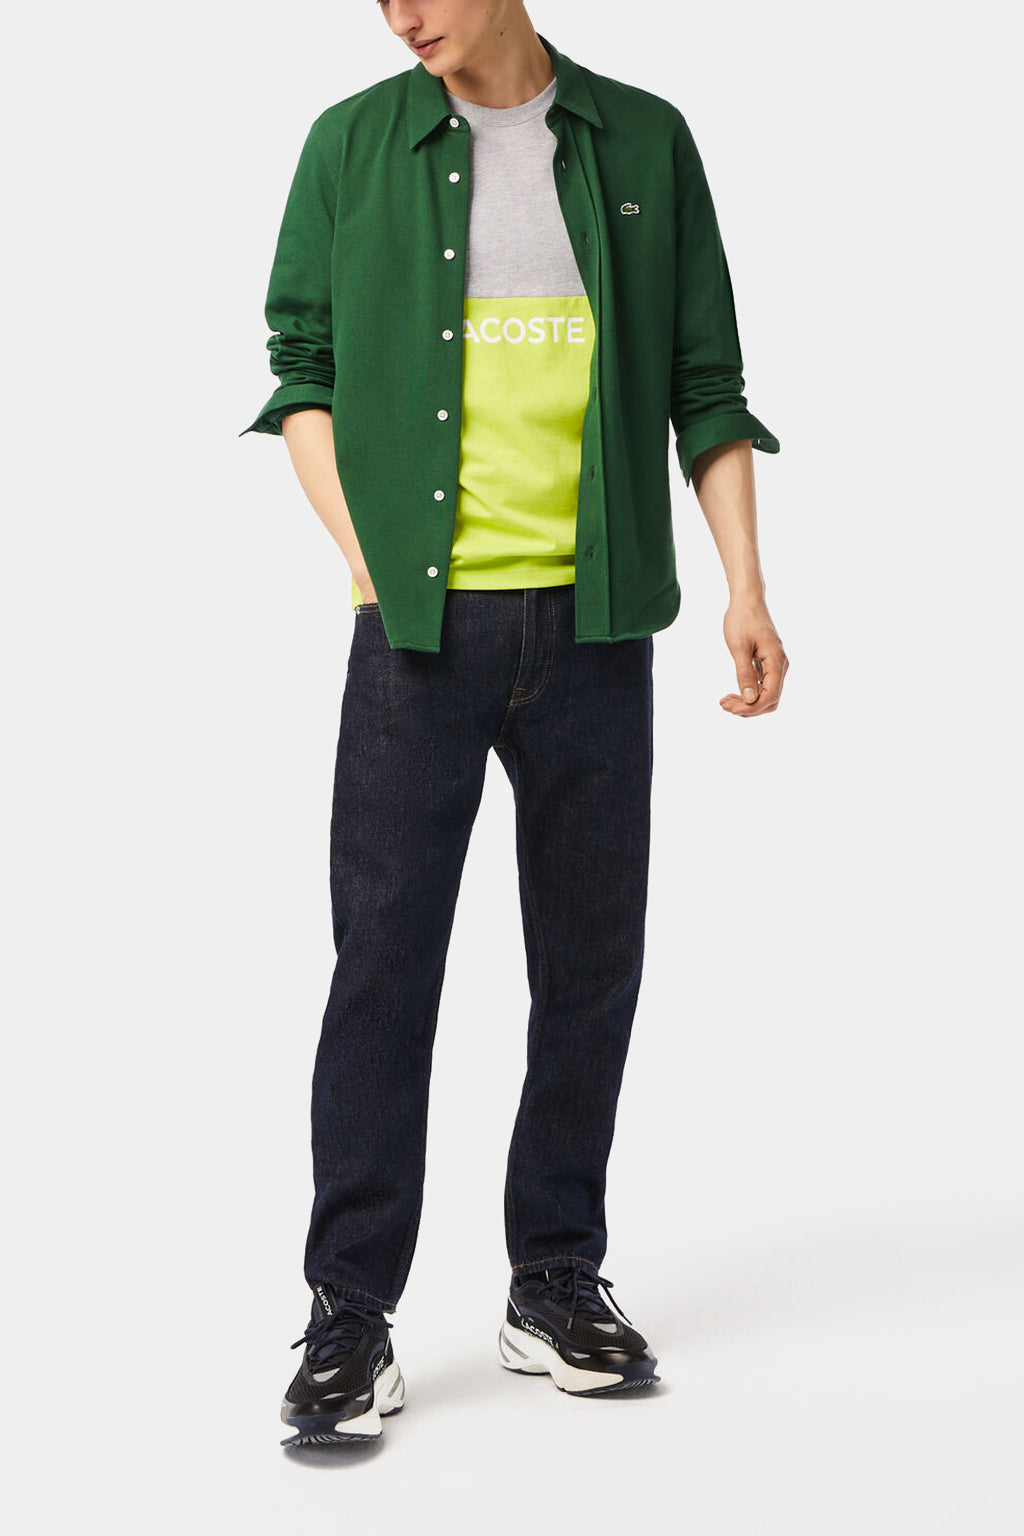 Lacoste - Men’s Lacoste Regular Fit Cotton Jersey Colourblock T-shirt